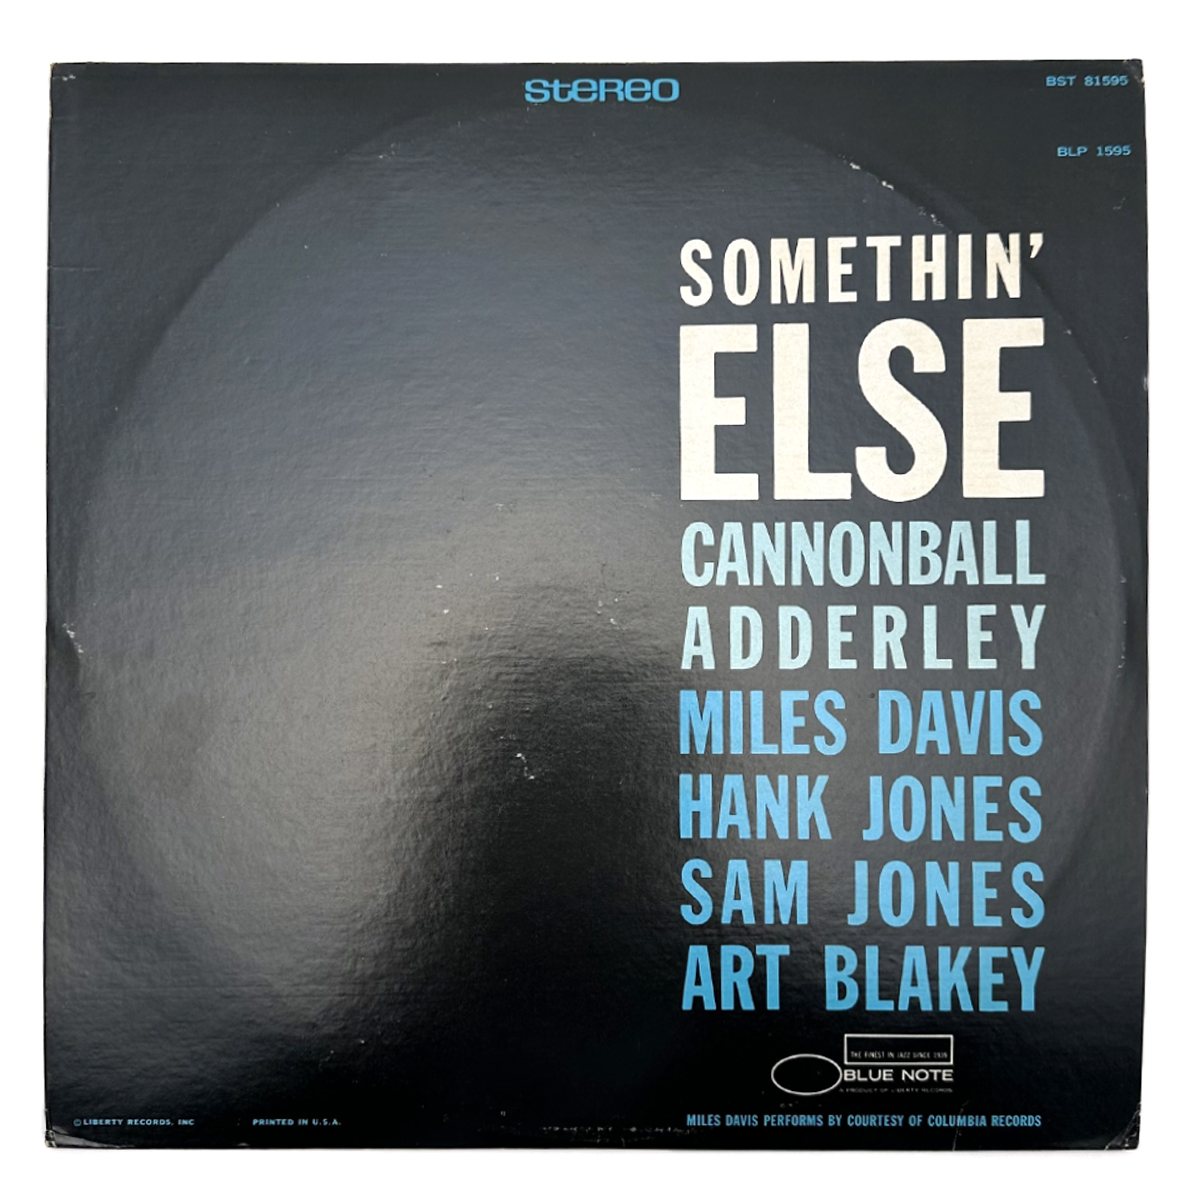 キャノンボール アダレイ(Cannonball Adderley) レコード SOMETHIN' ELSE BST81595 US盤 青白LIB BLUE NOTE